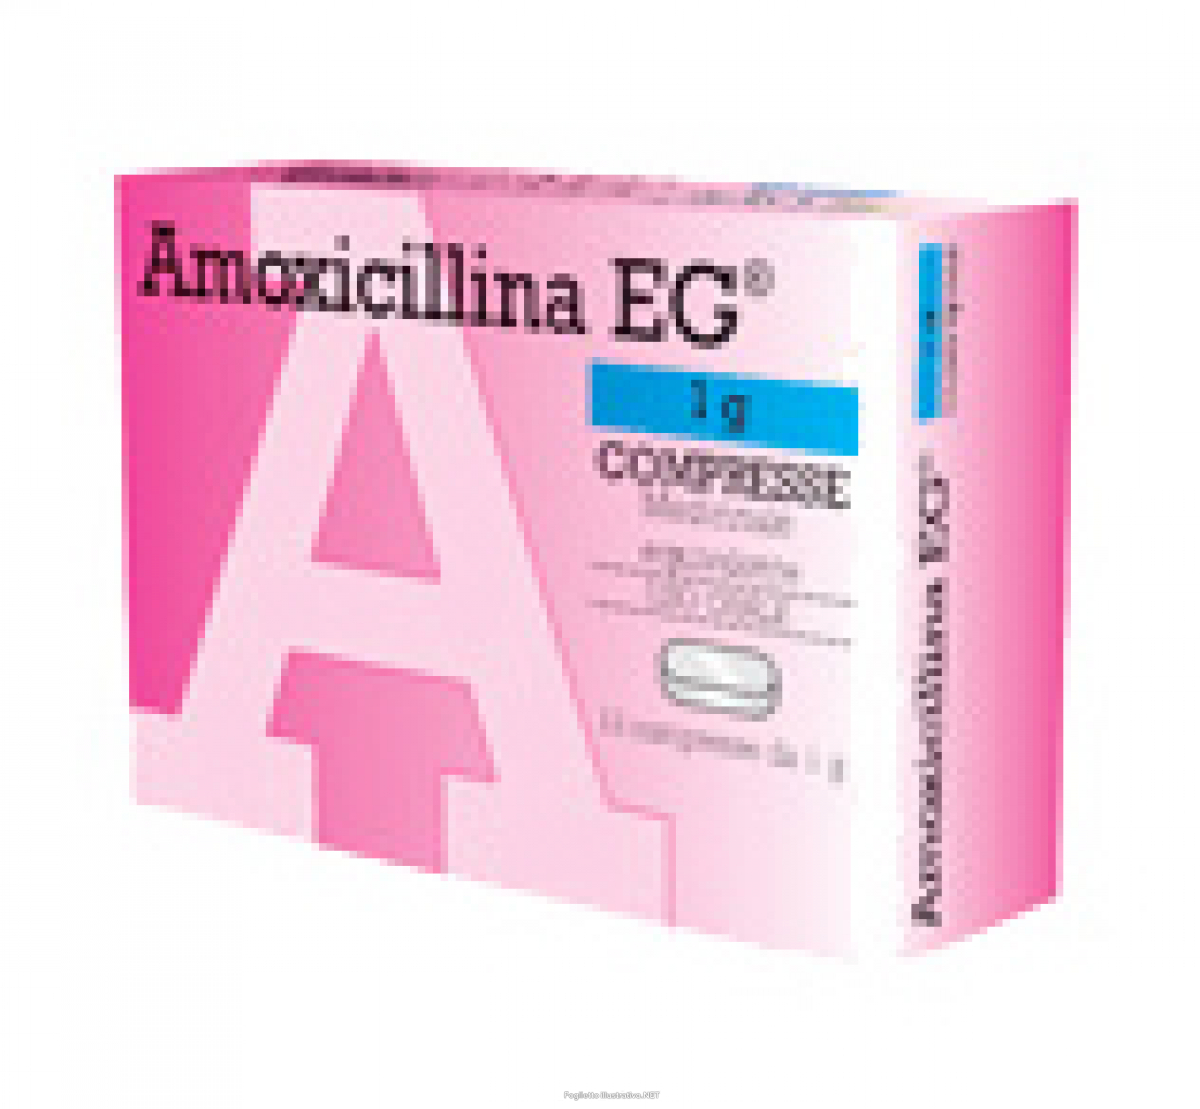 Quanto dura la cura con amoxicillina?